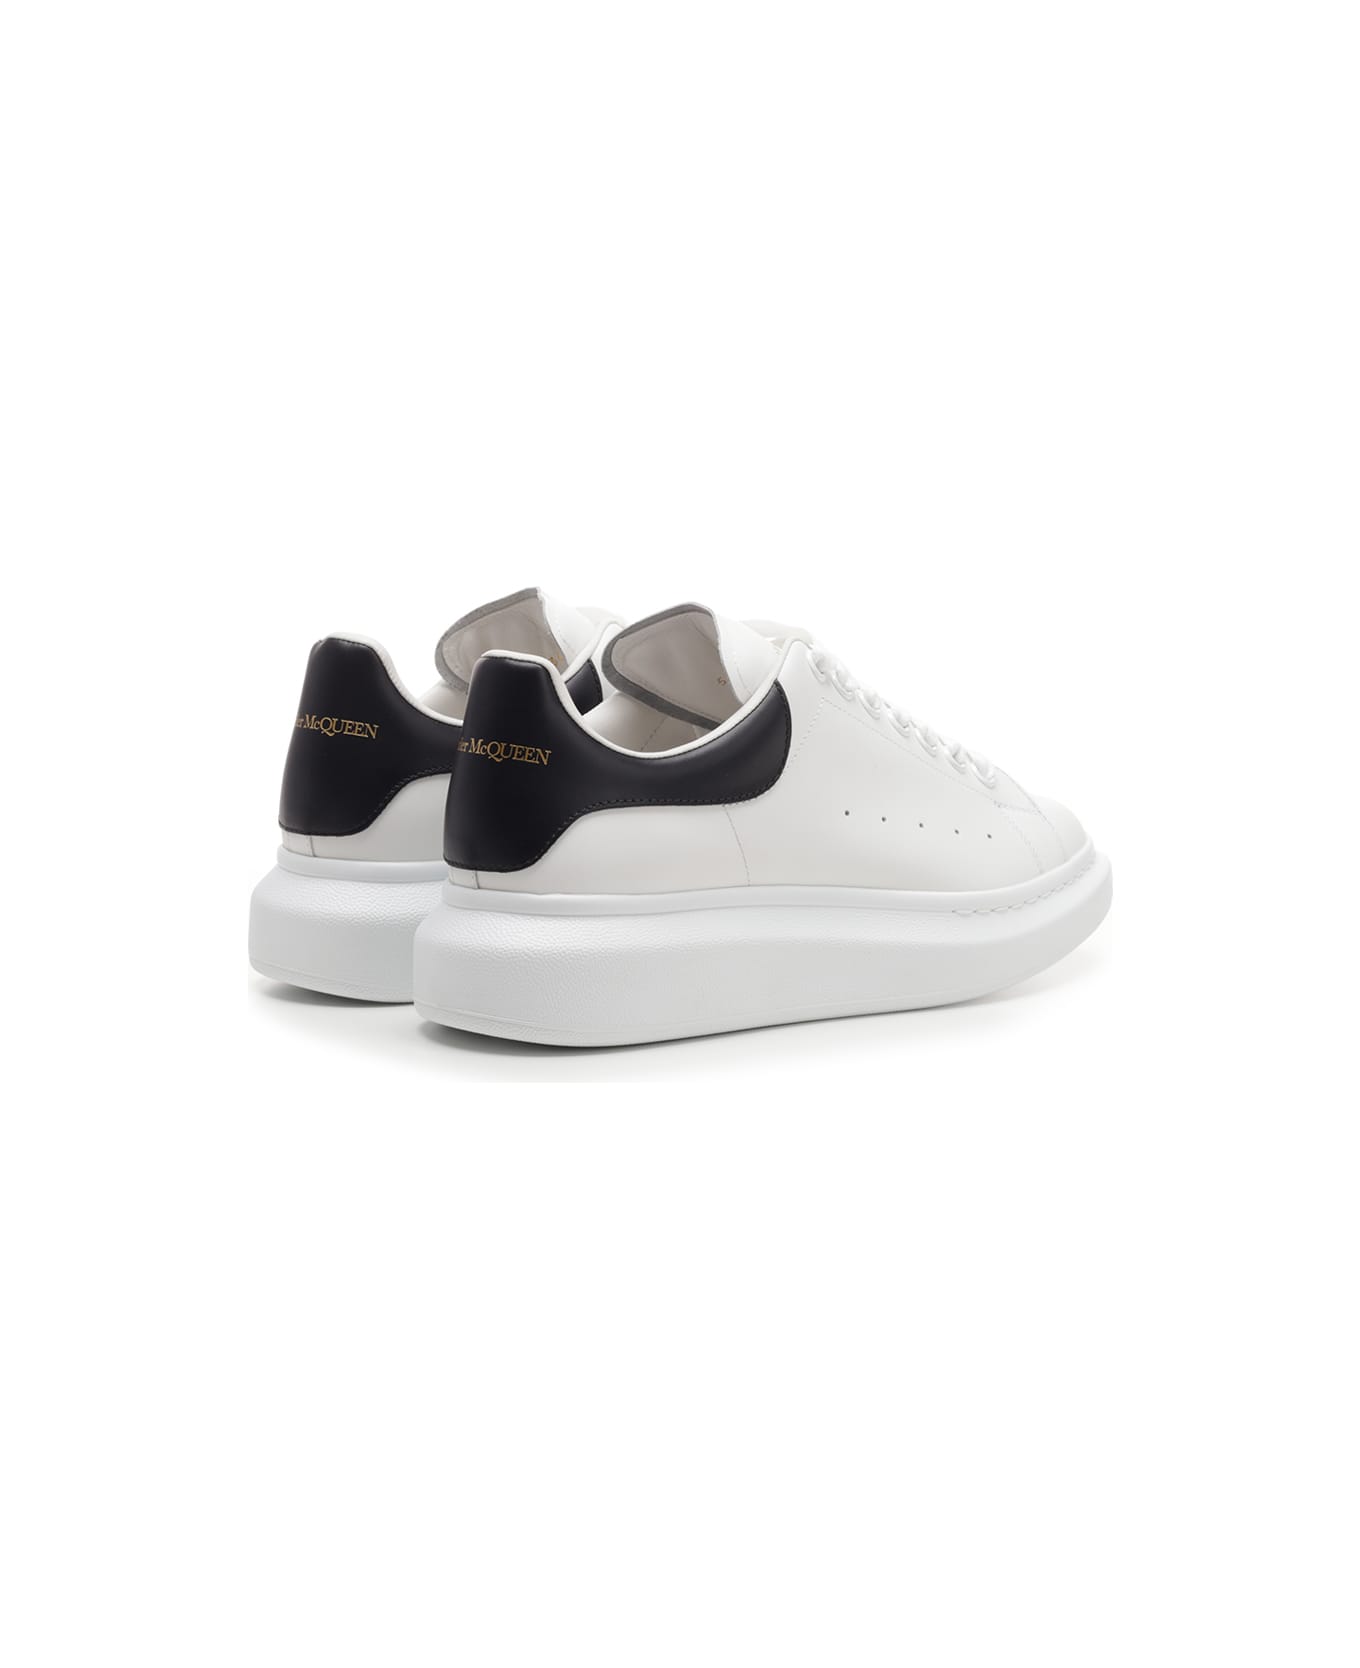 Alexander McQueen 'oversize' Sneakers With Black Heel Tab - White